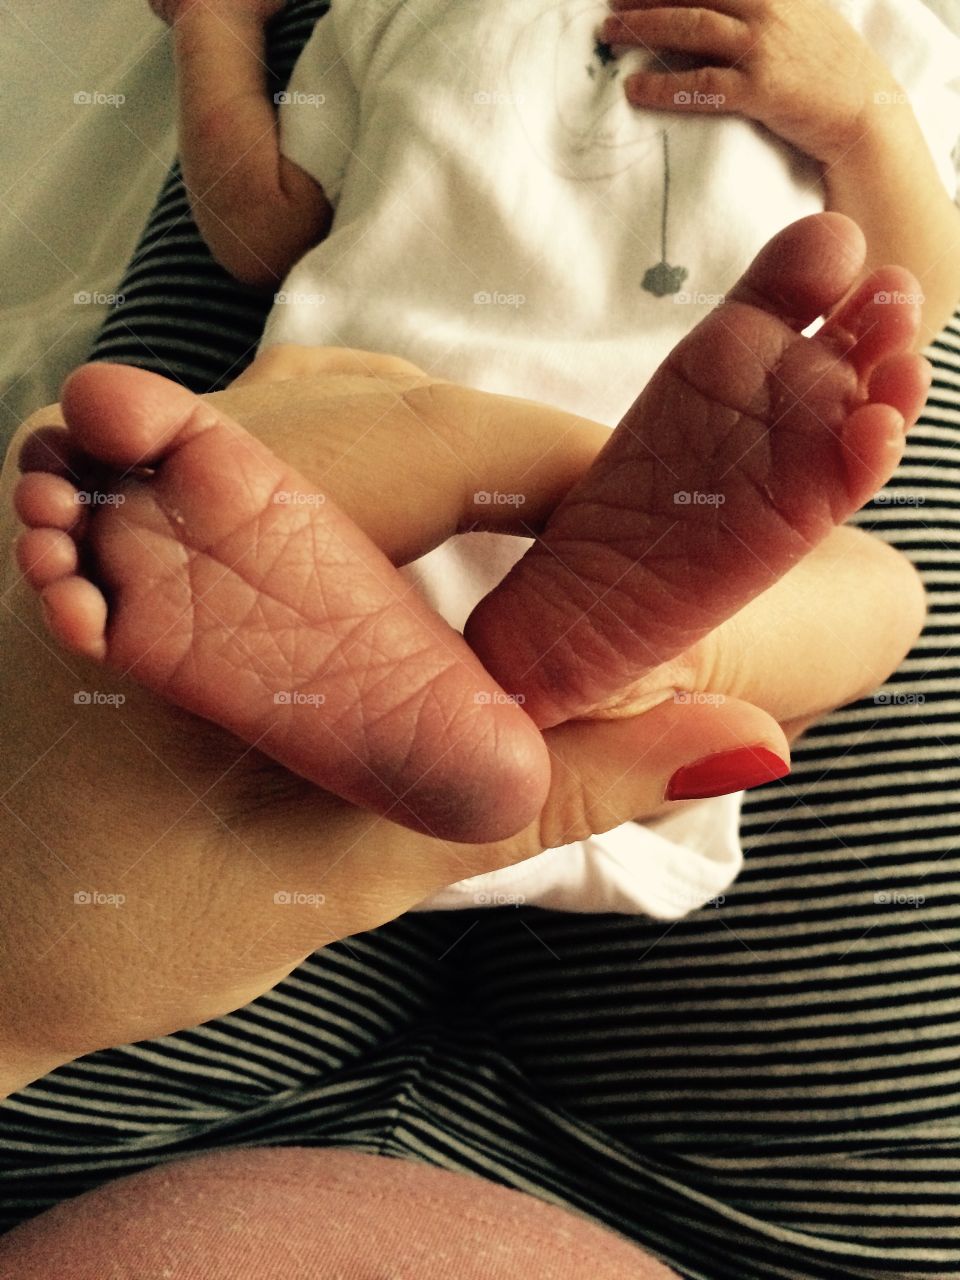 Newborn feet 